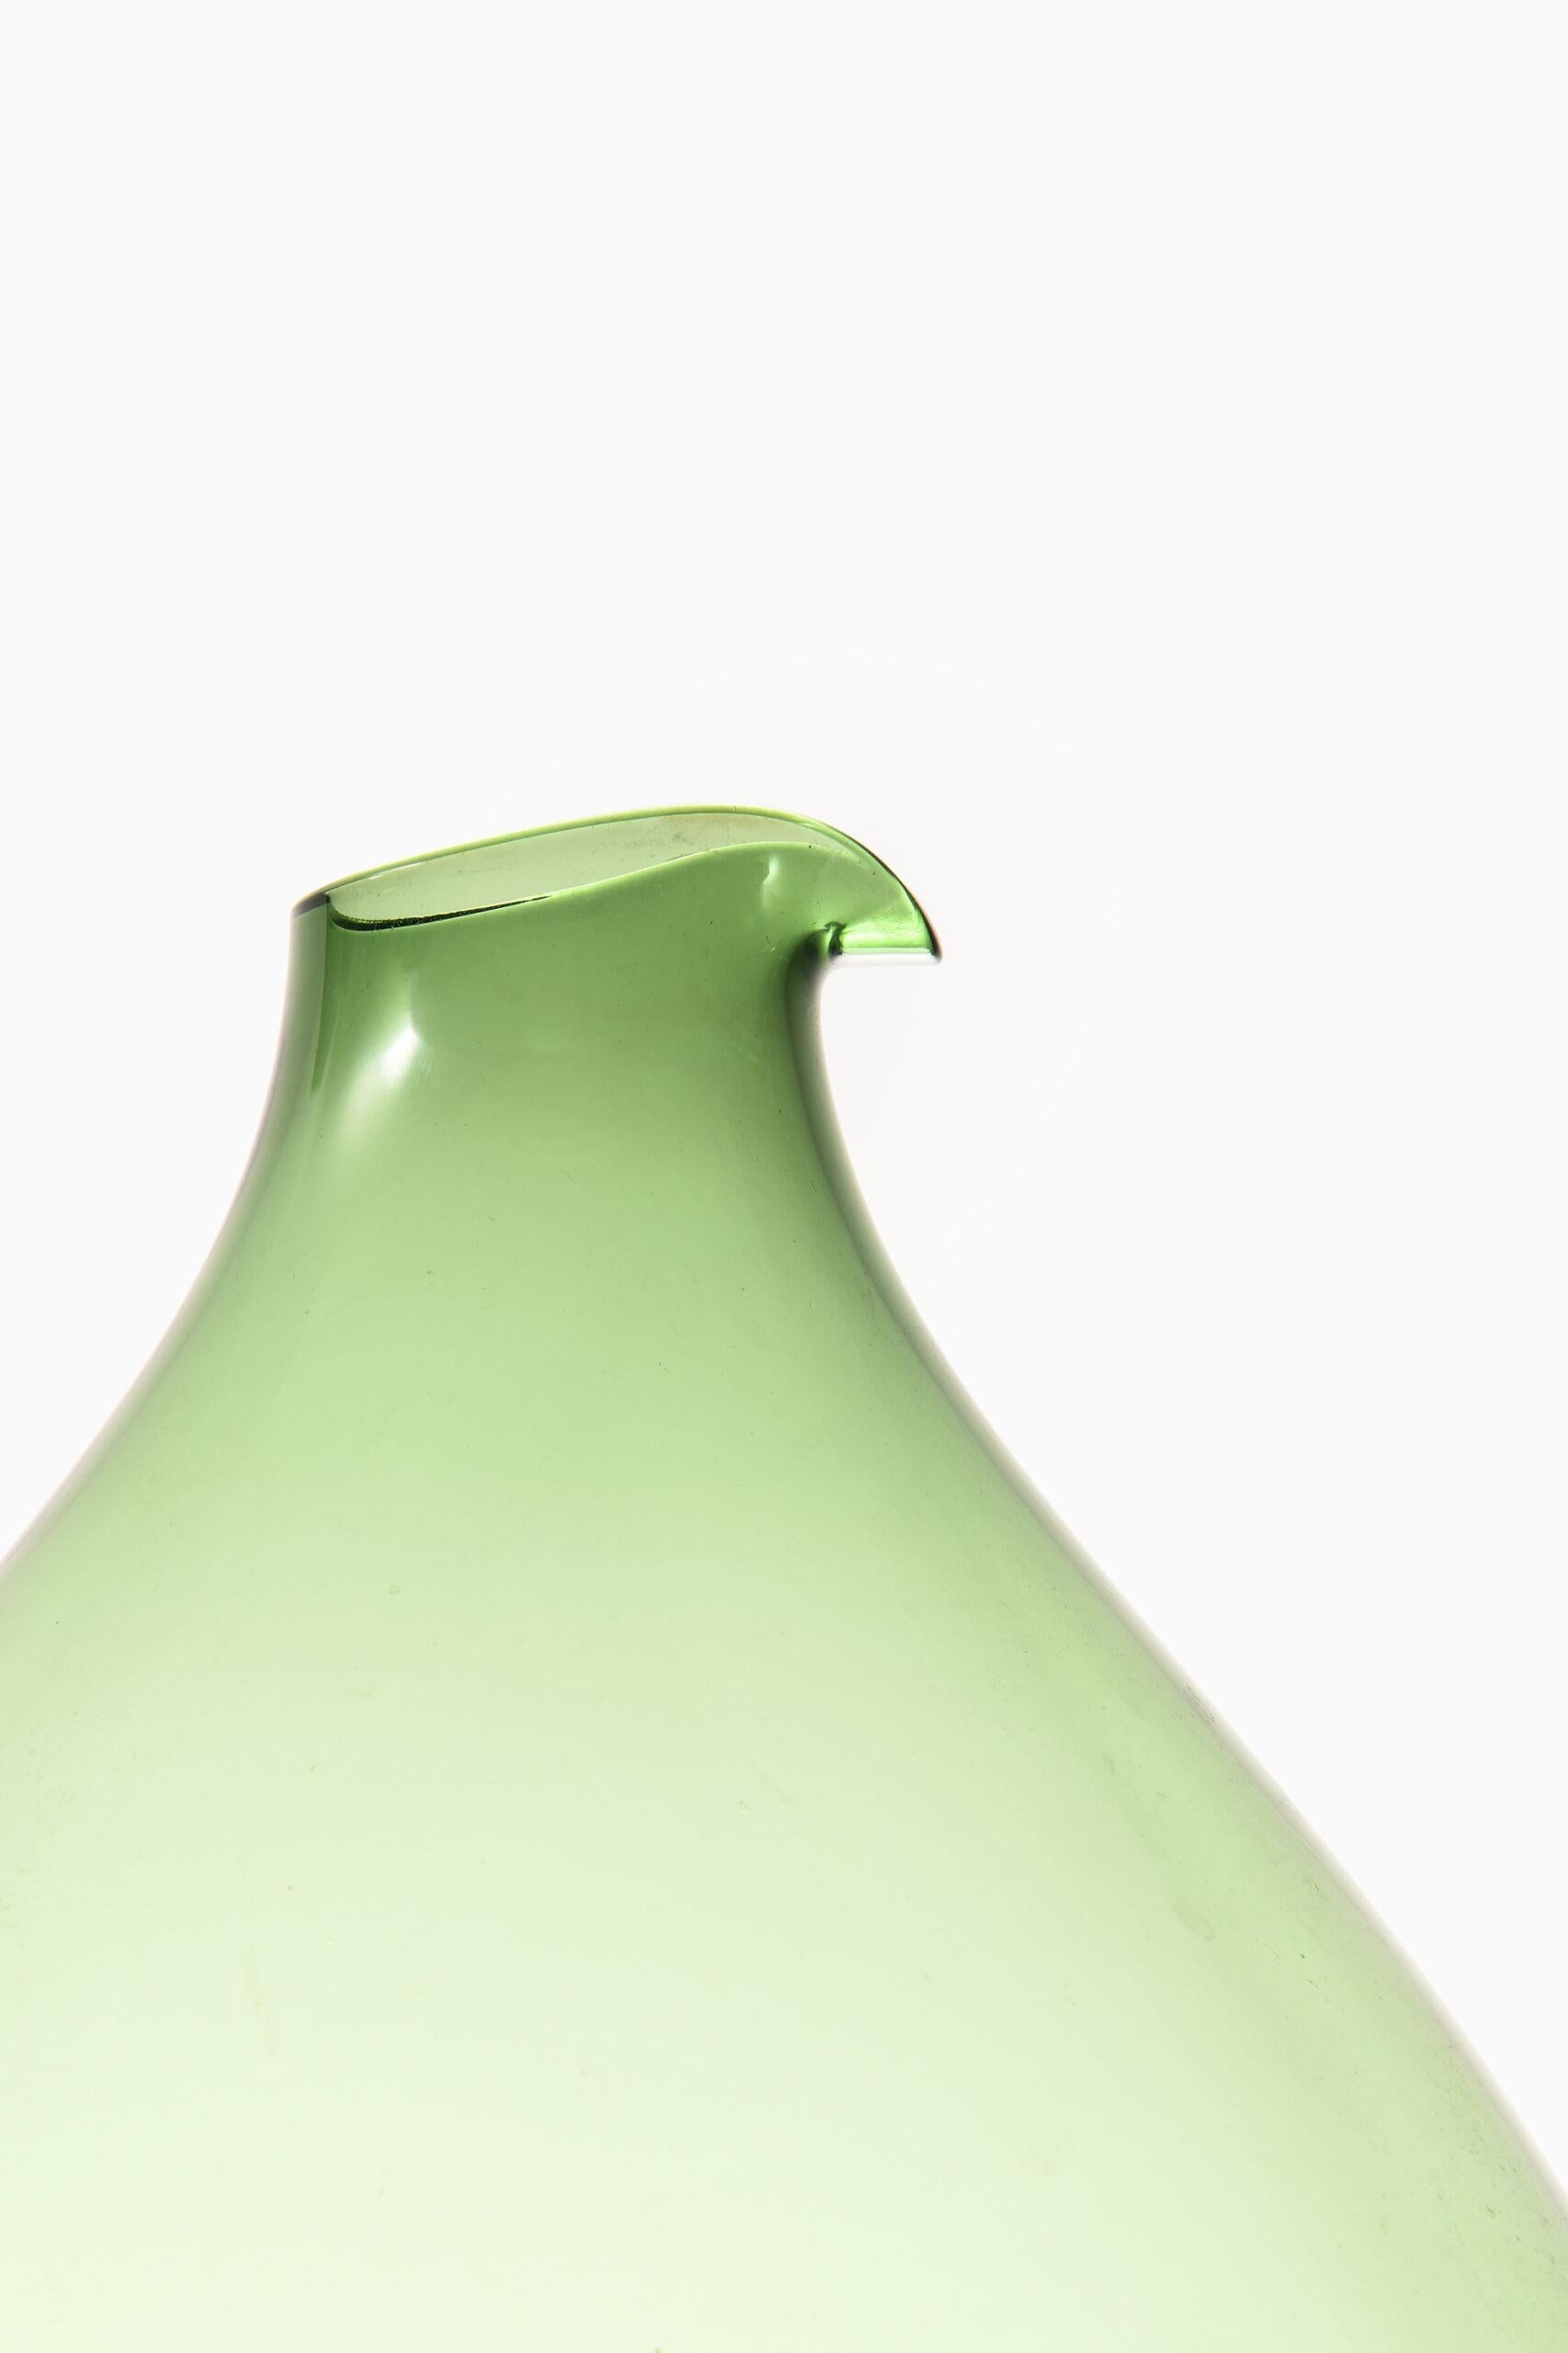 Rare and large glass vase designed by Kjell Blomberg. Produced by Gullaskruf in Sweden.